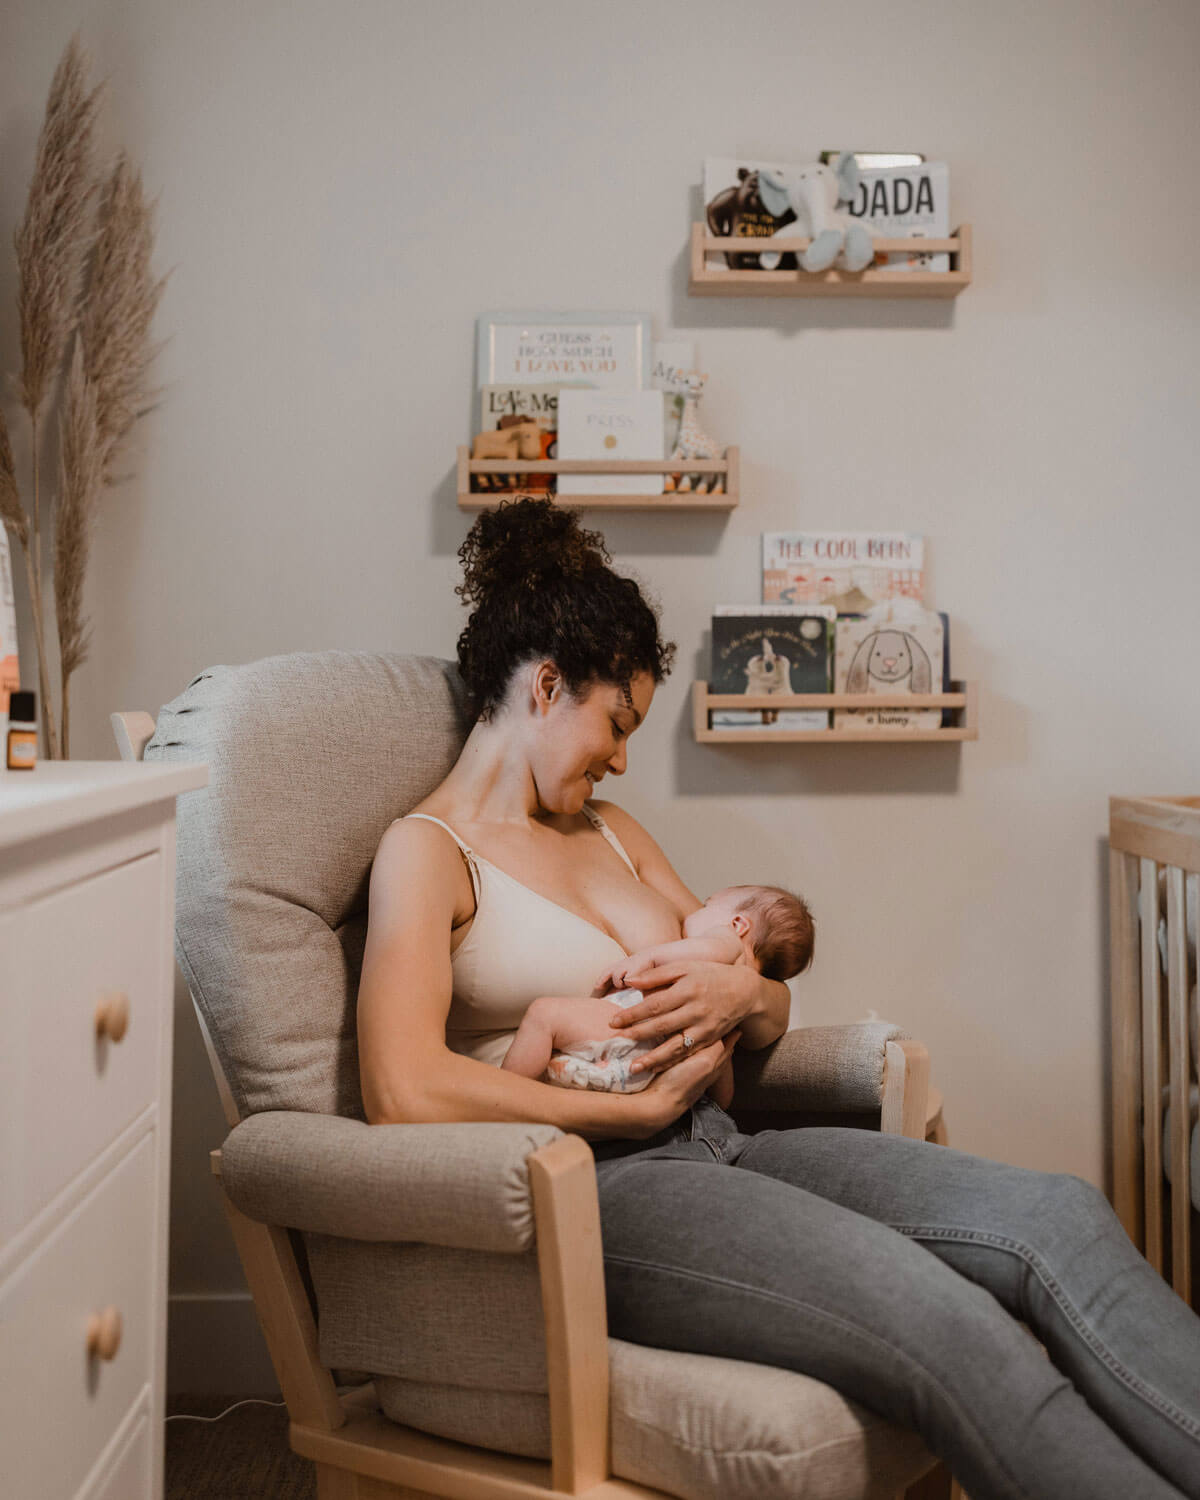 Breastfeeding Apparel - Nursing Bras, Tank Tops, Shawls